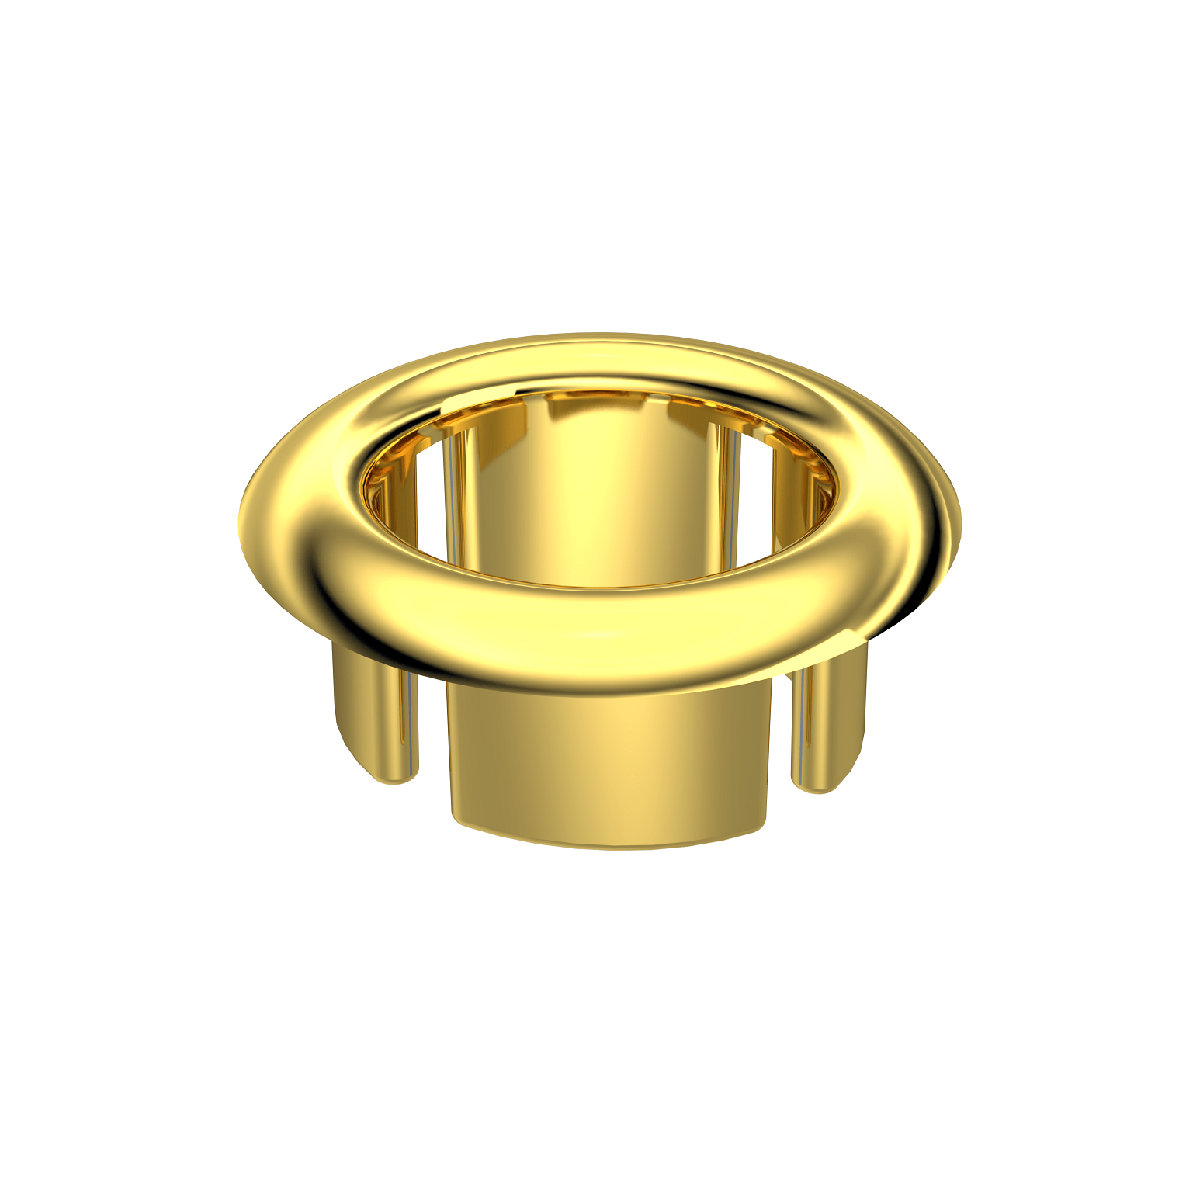  Lavabo Su Taşma YüzüğüTüm lavabo deliklerine uygundur. Standart modeldi